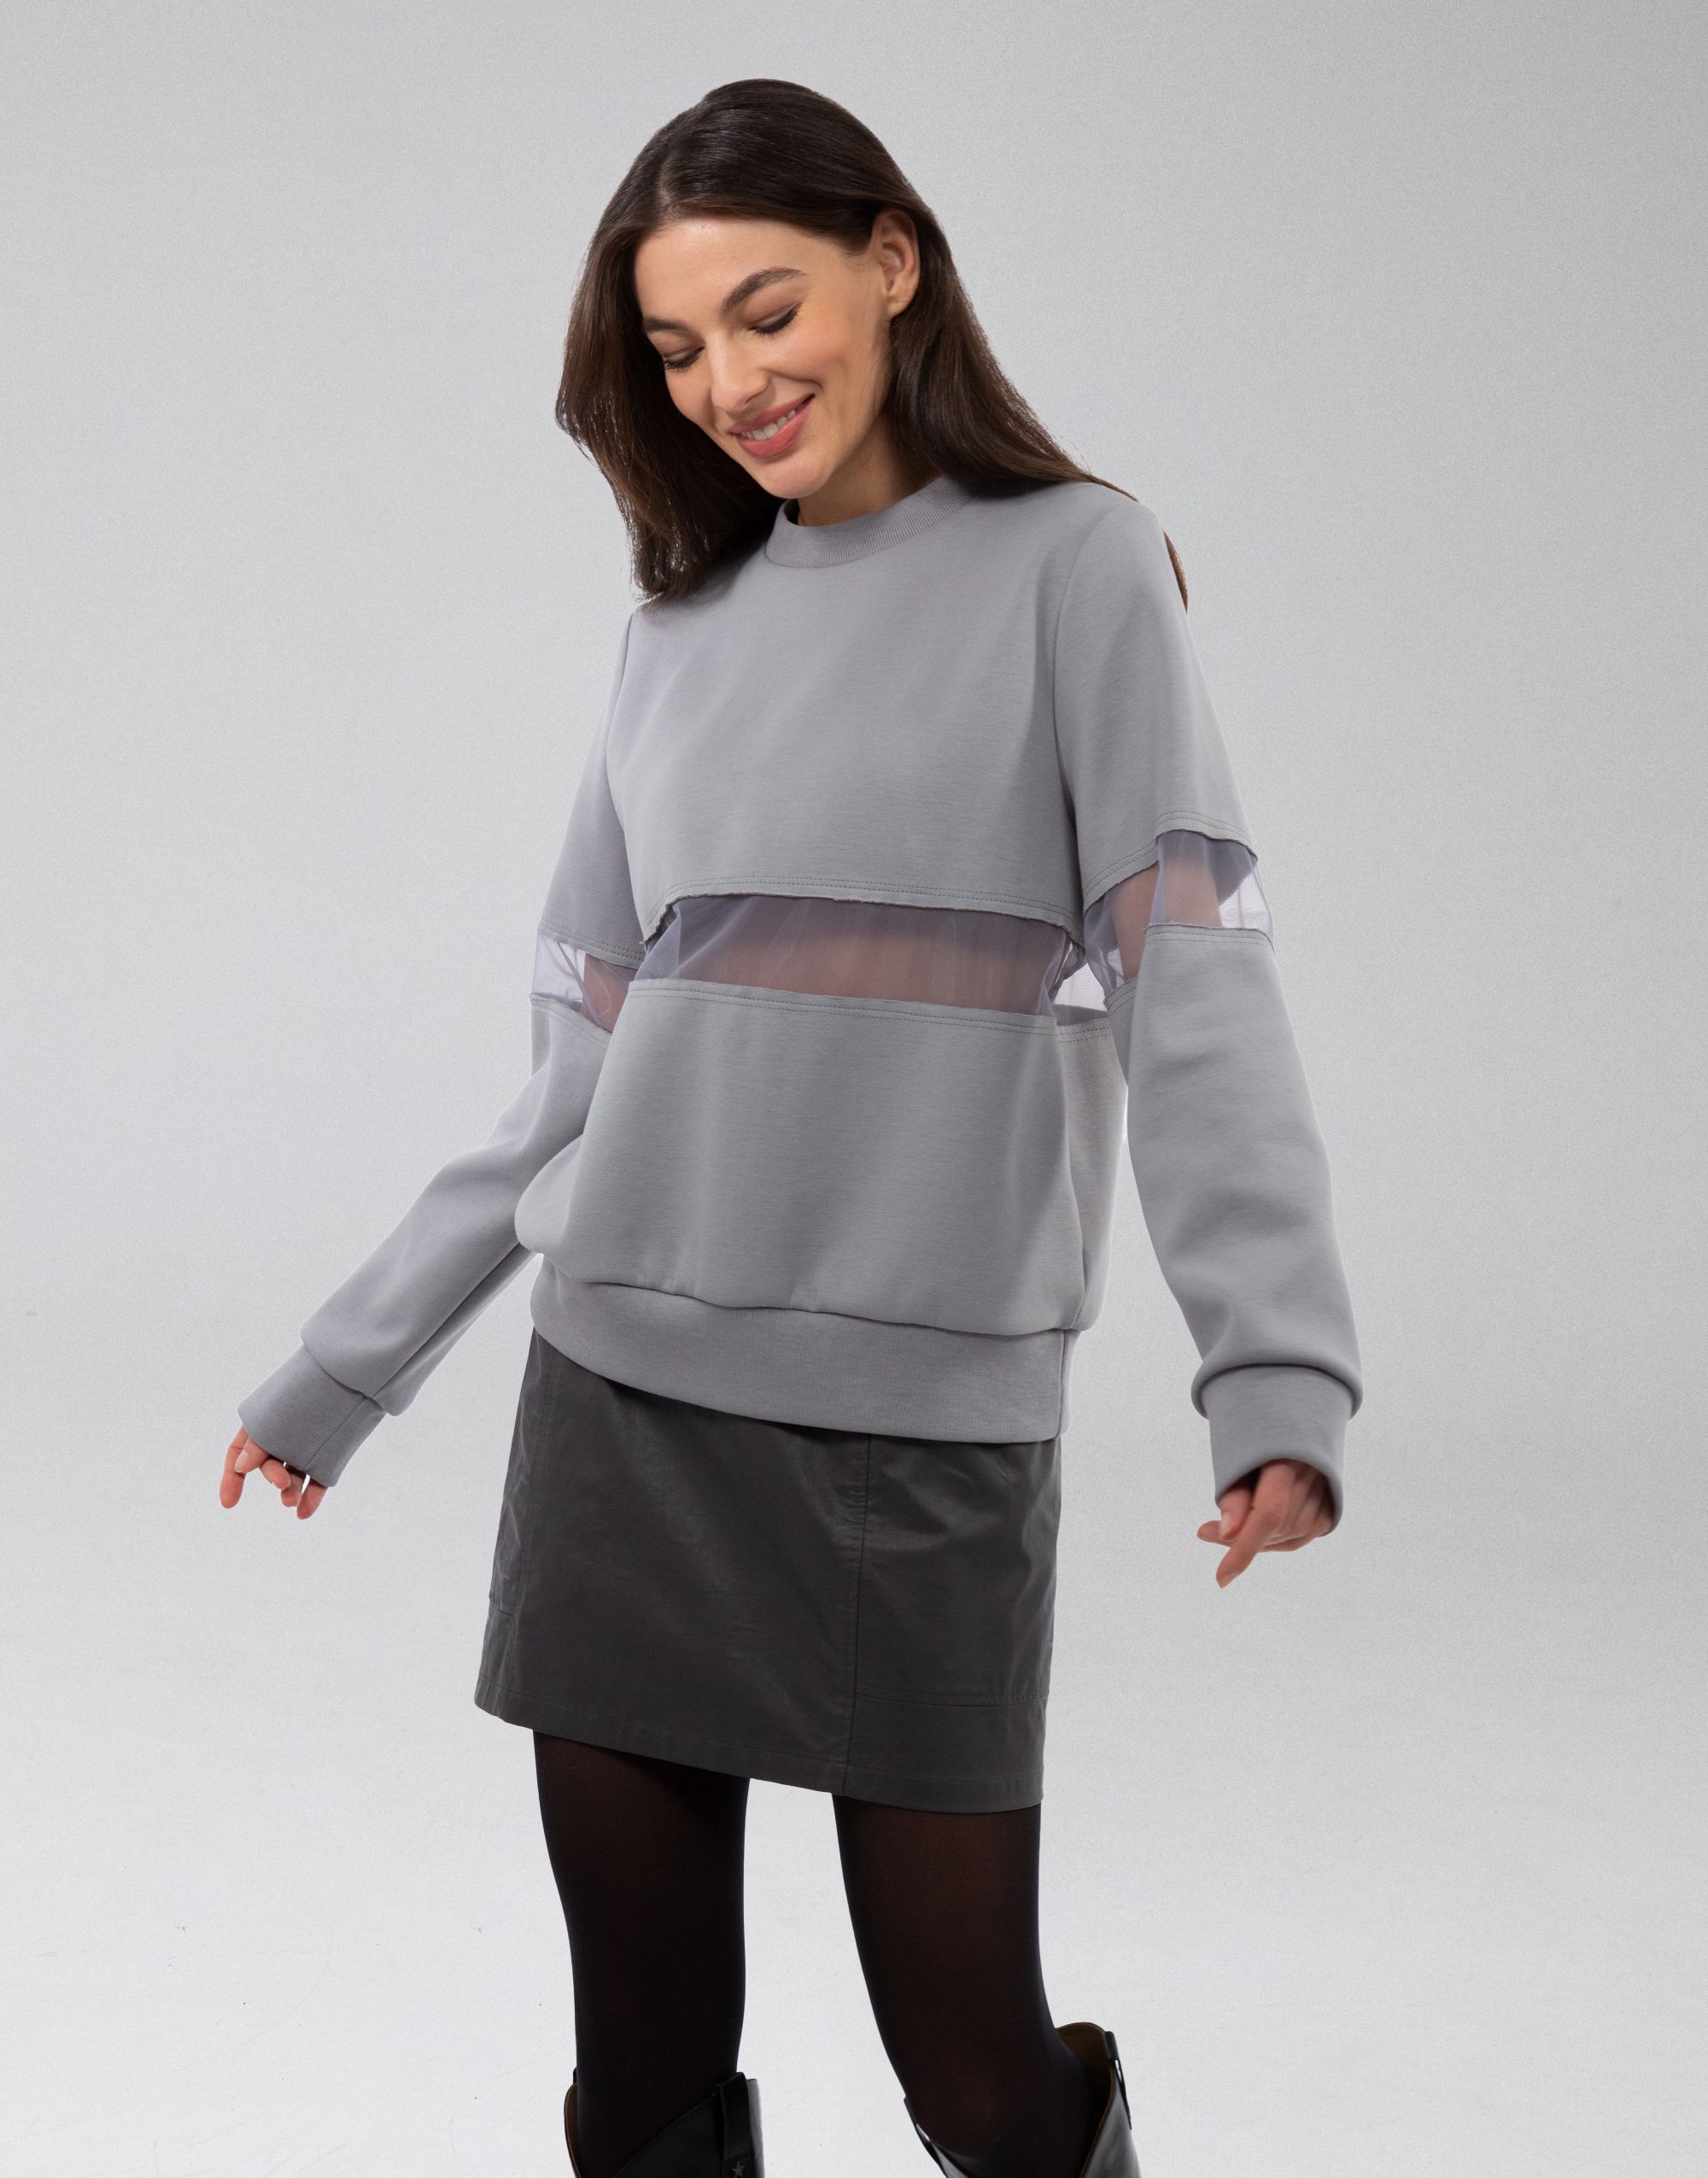 Sweatshirt, pattern №1081